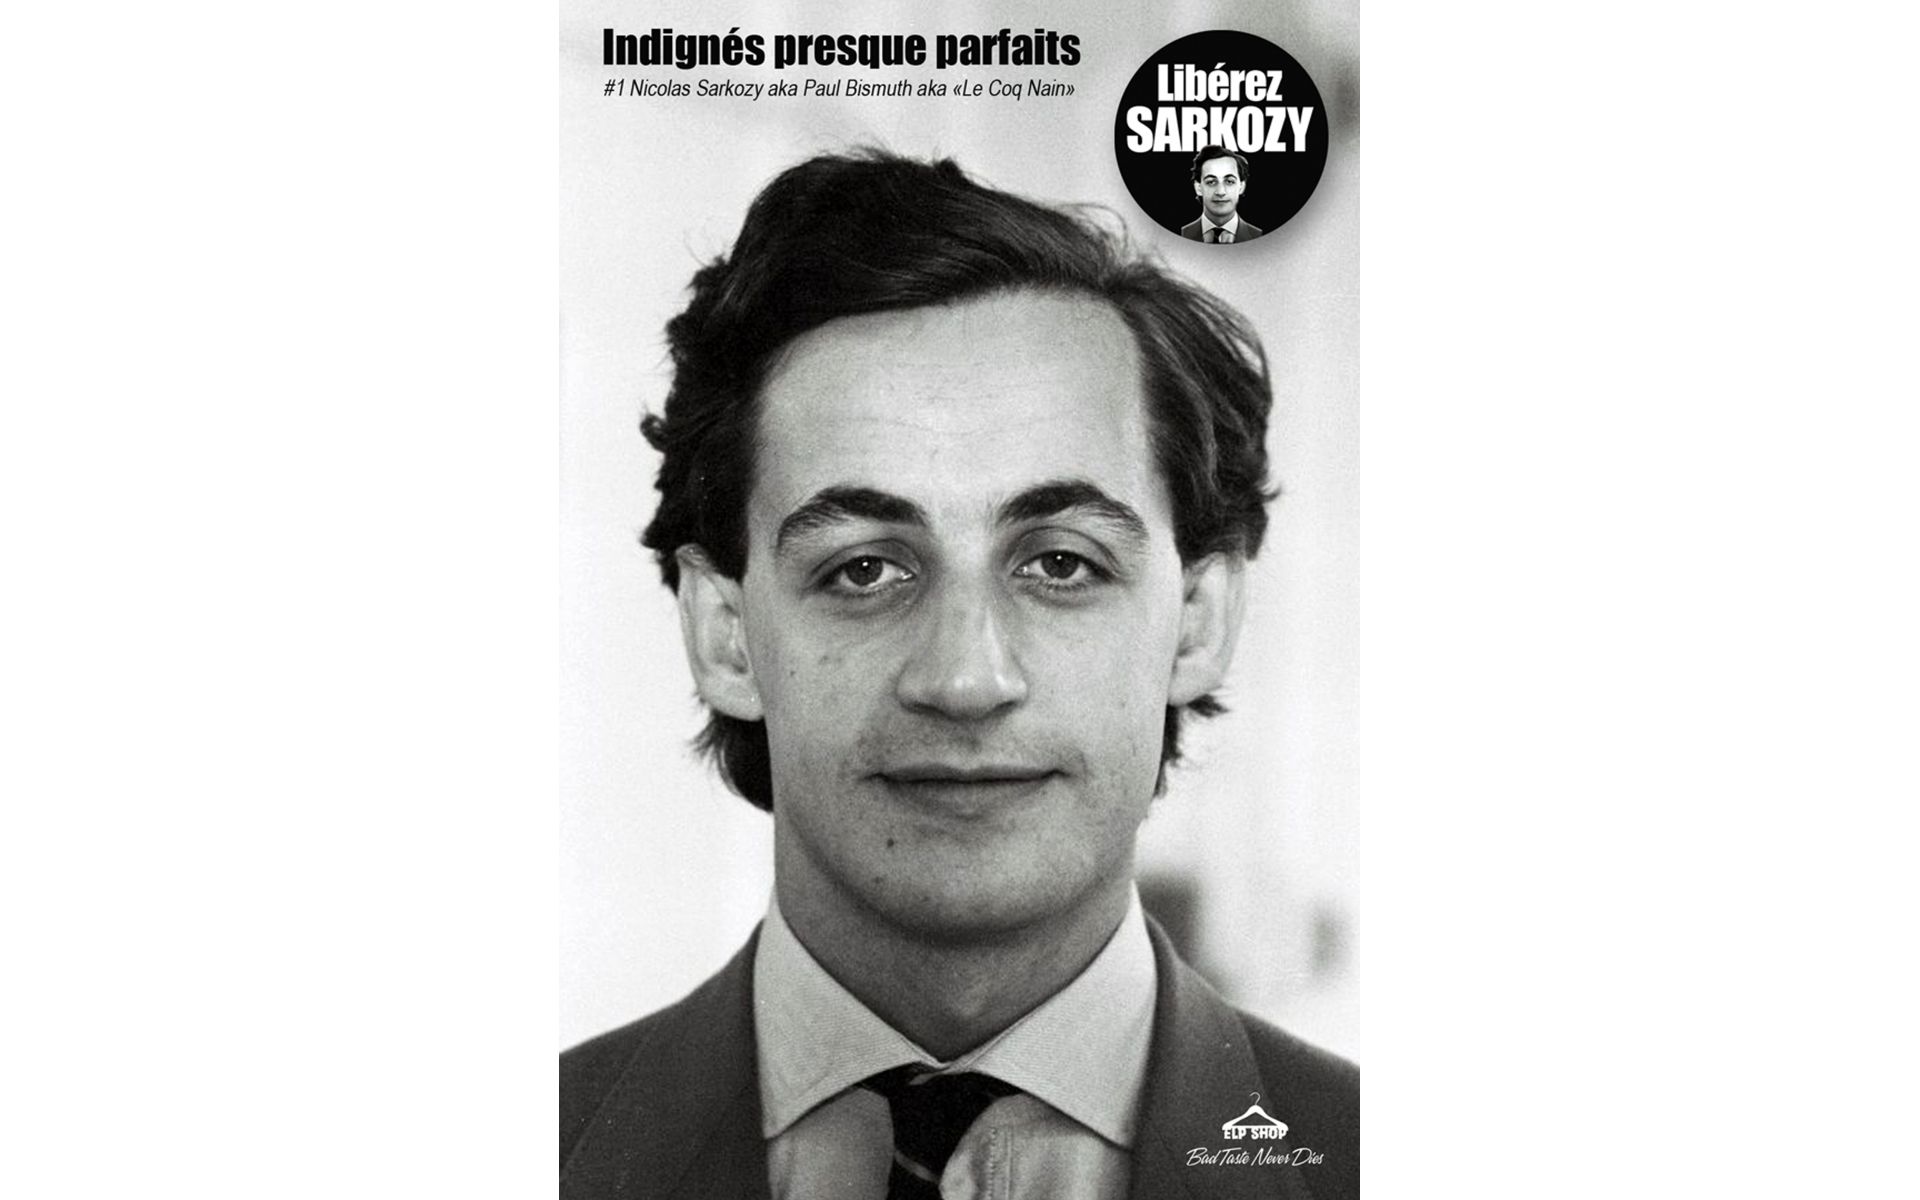 Libérez Sarkozy